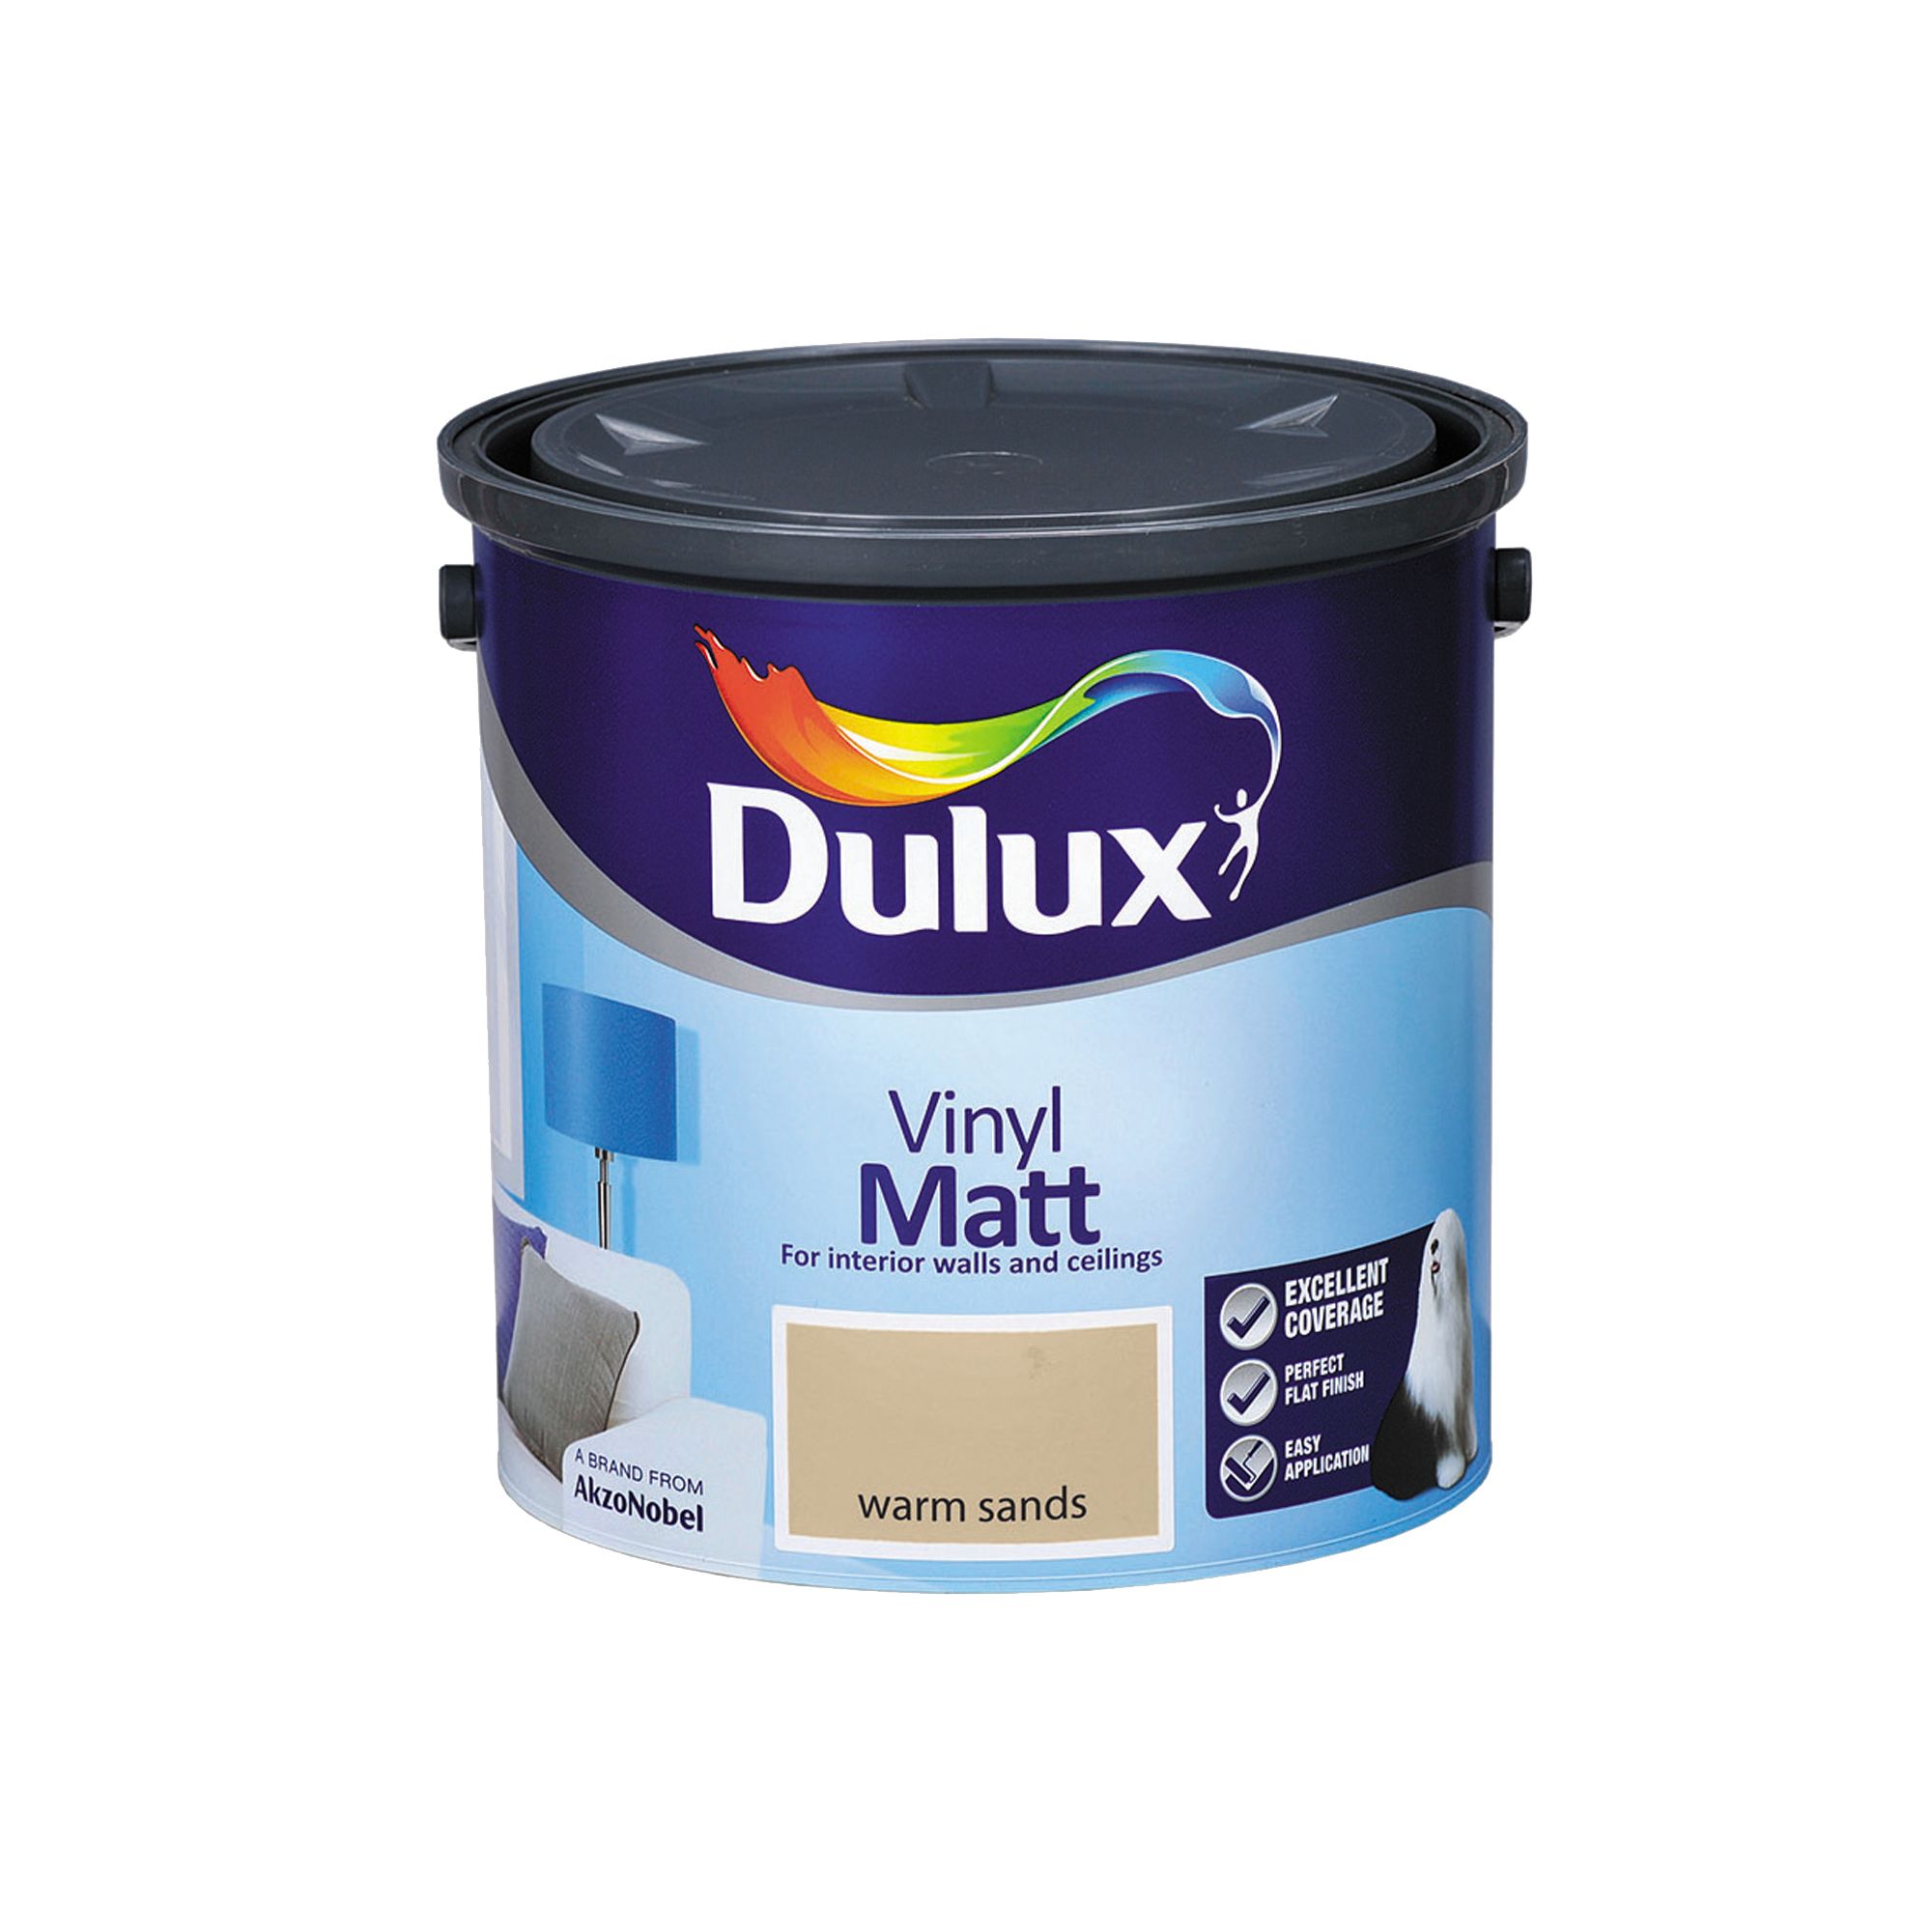 Dulux Warm sands Vinyl matt Emulsion paint, 2.5L